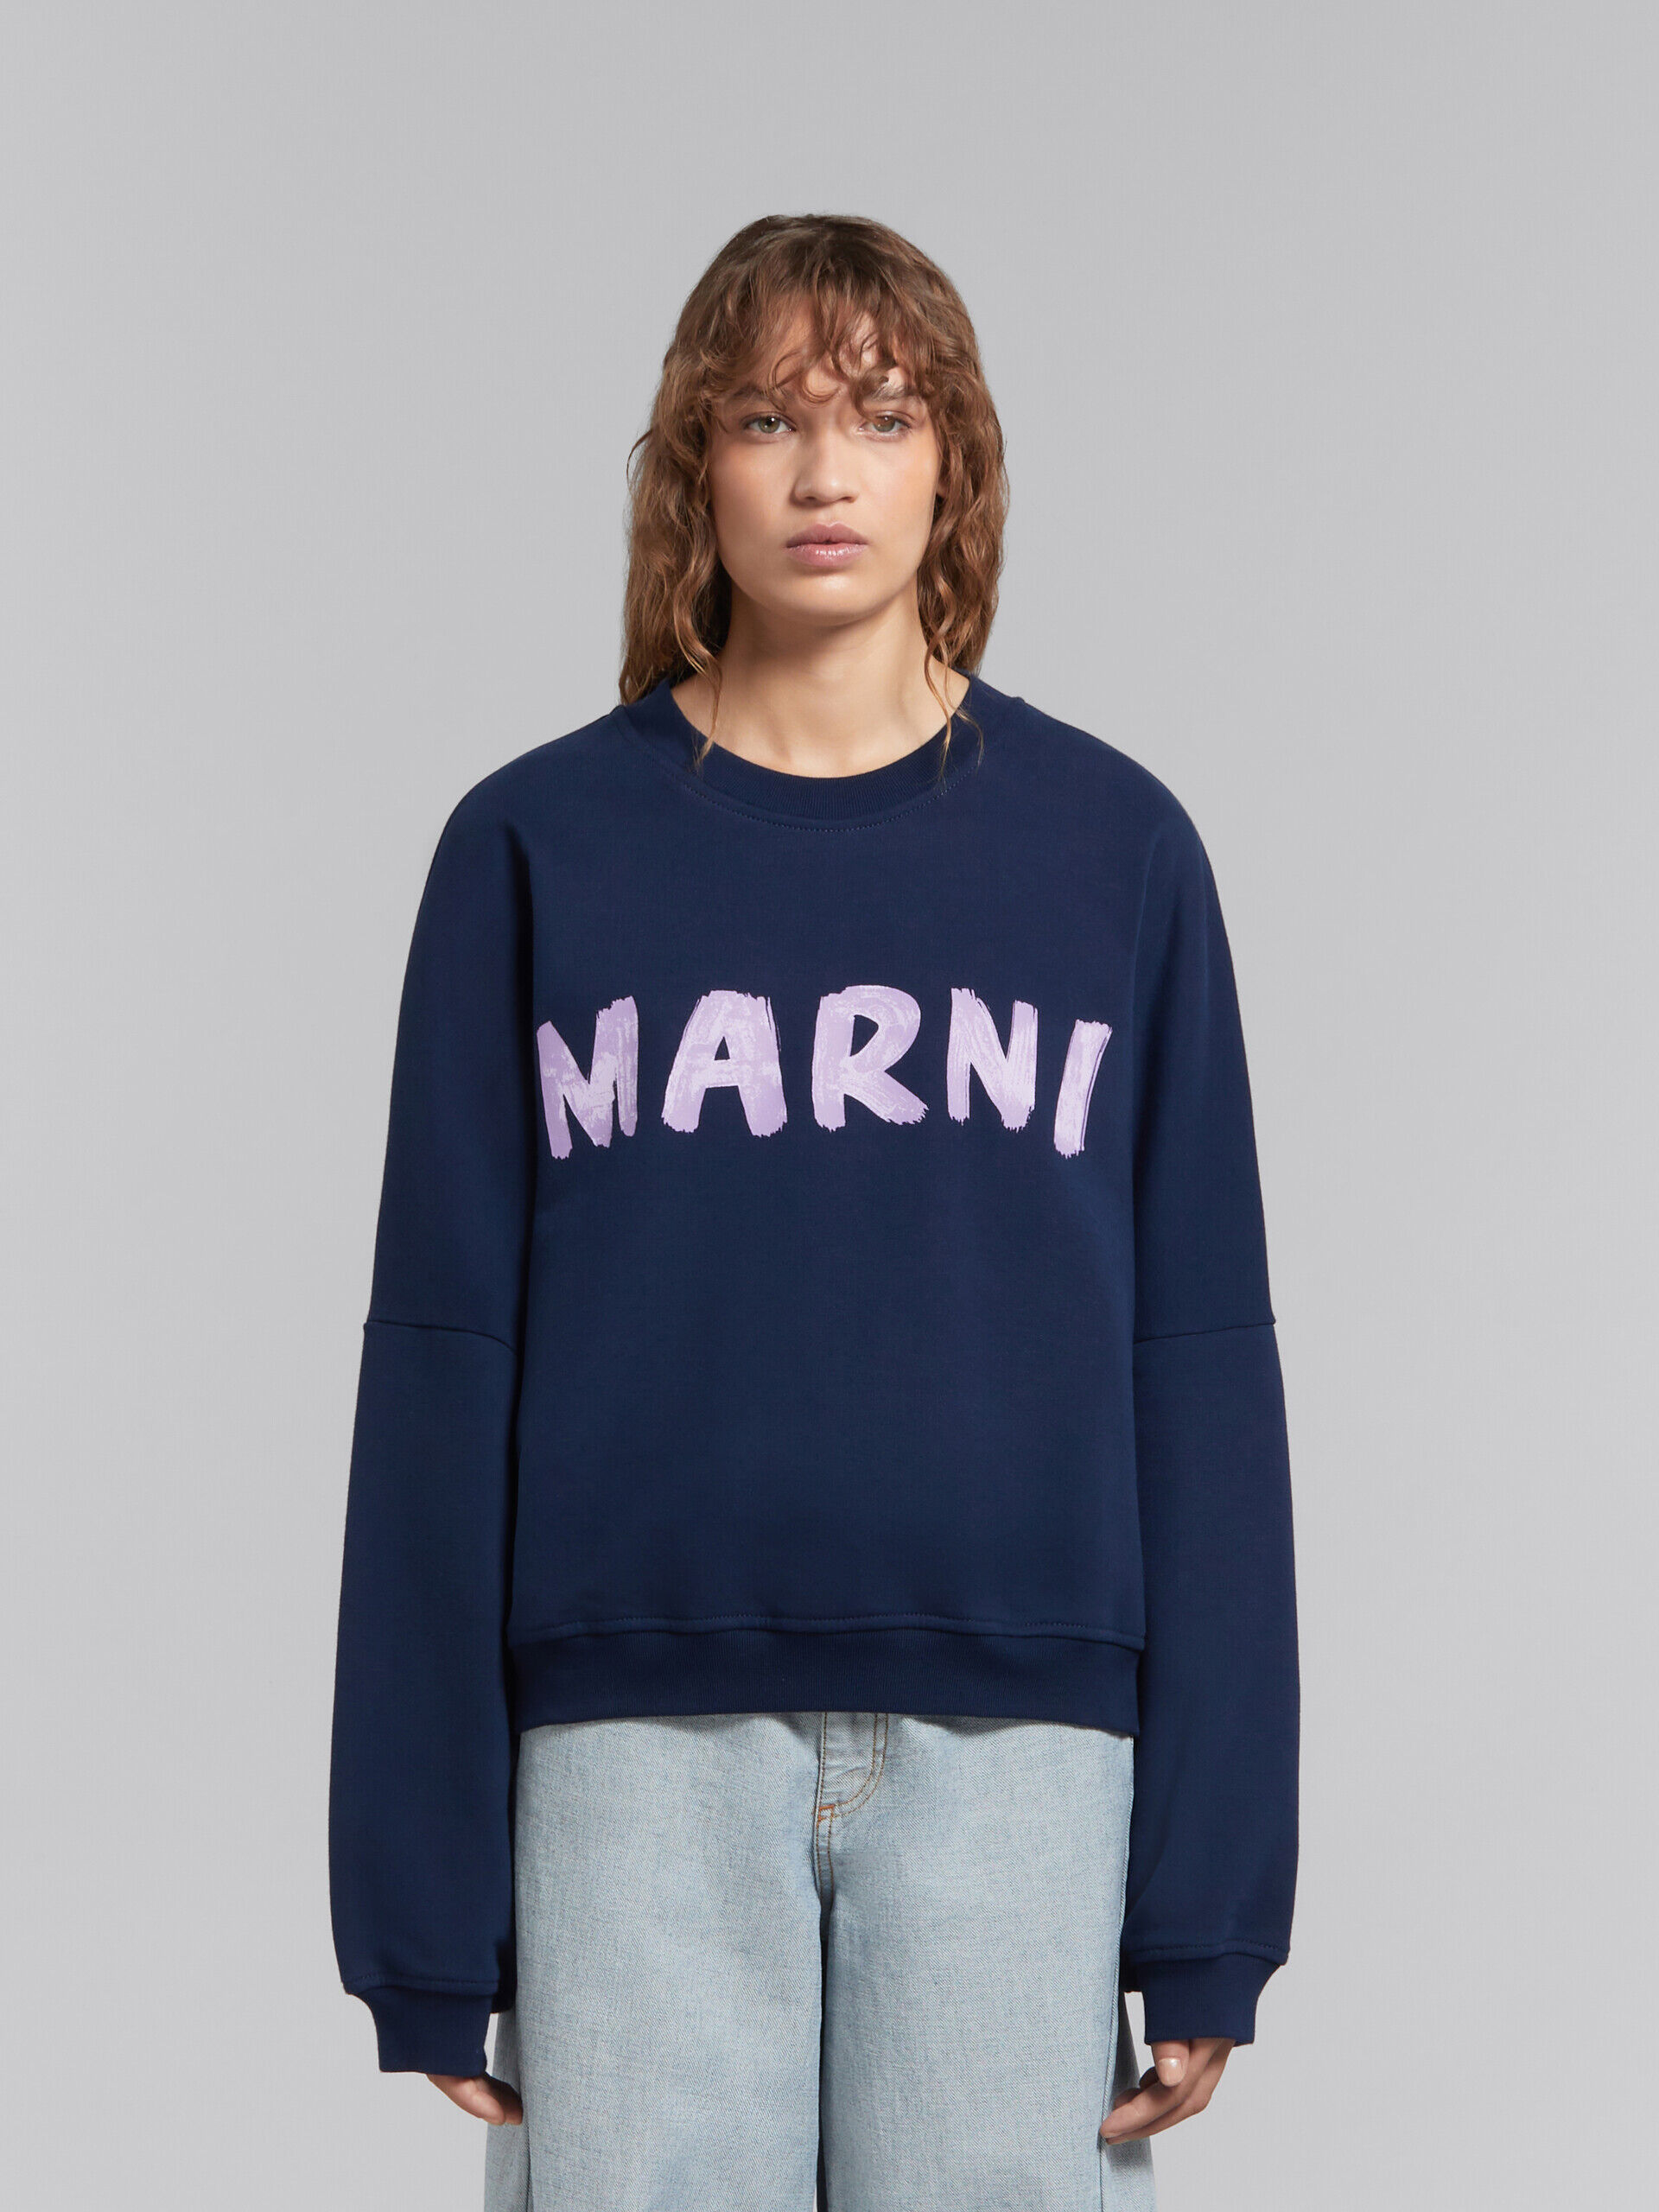 ブルー マルニプリント オーガニックコットン製スウェットシャツ | Marni